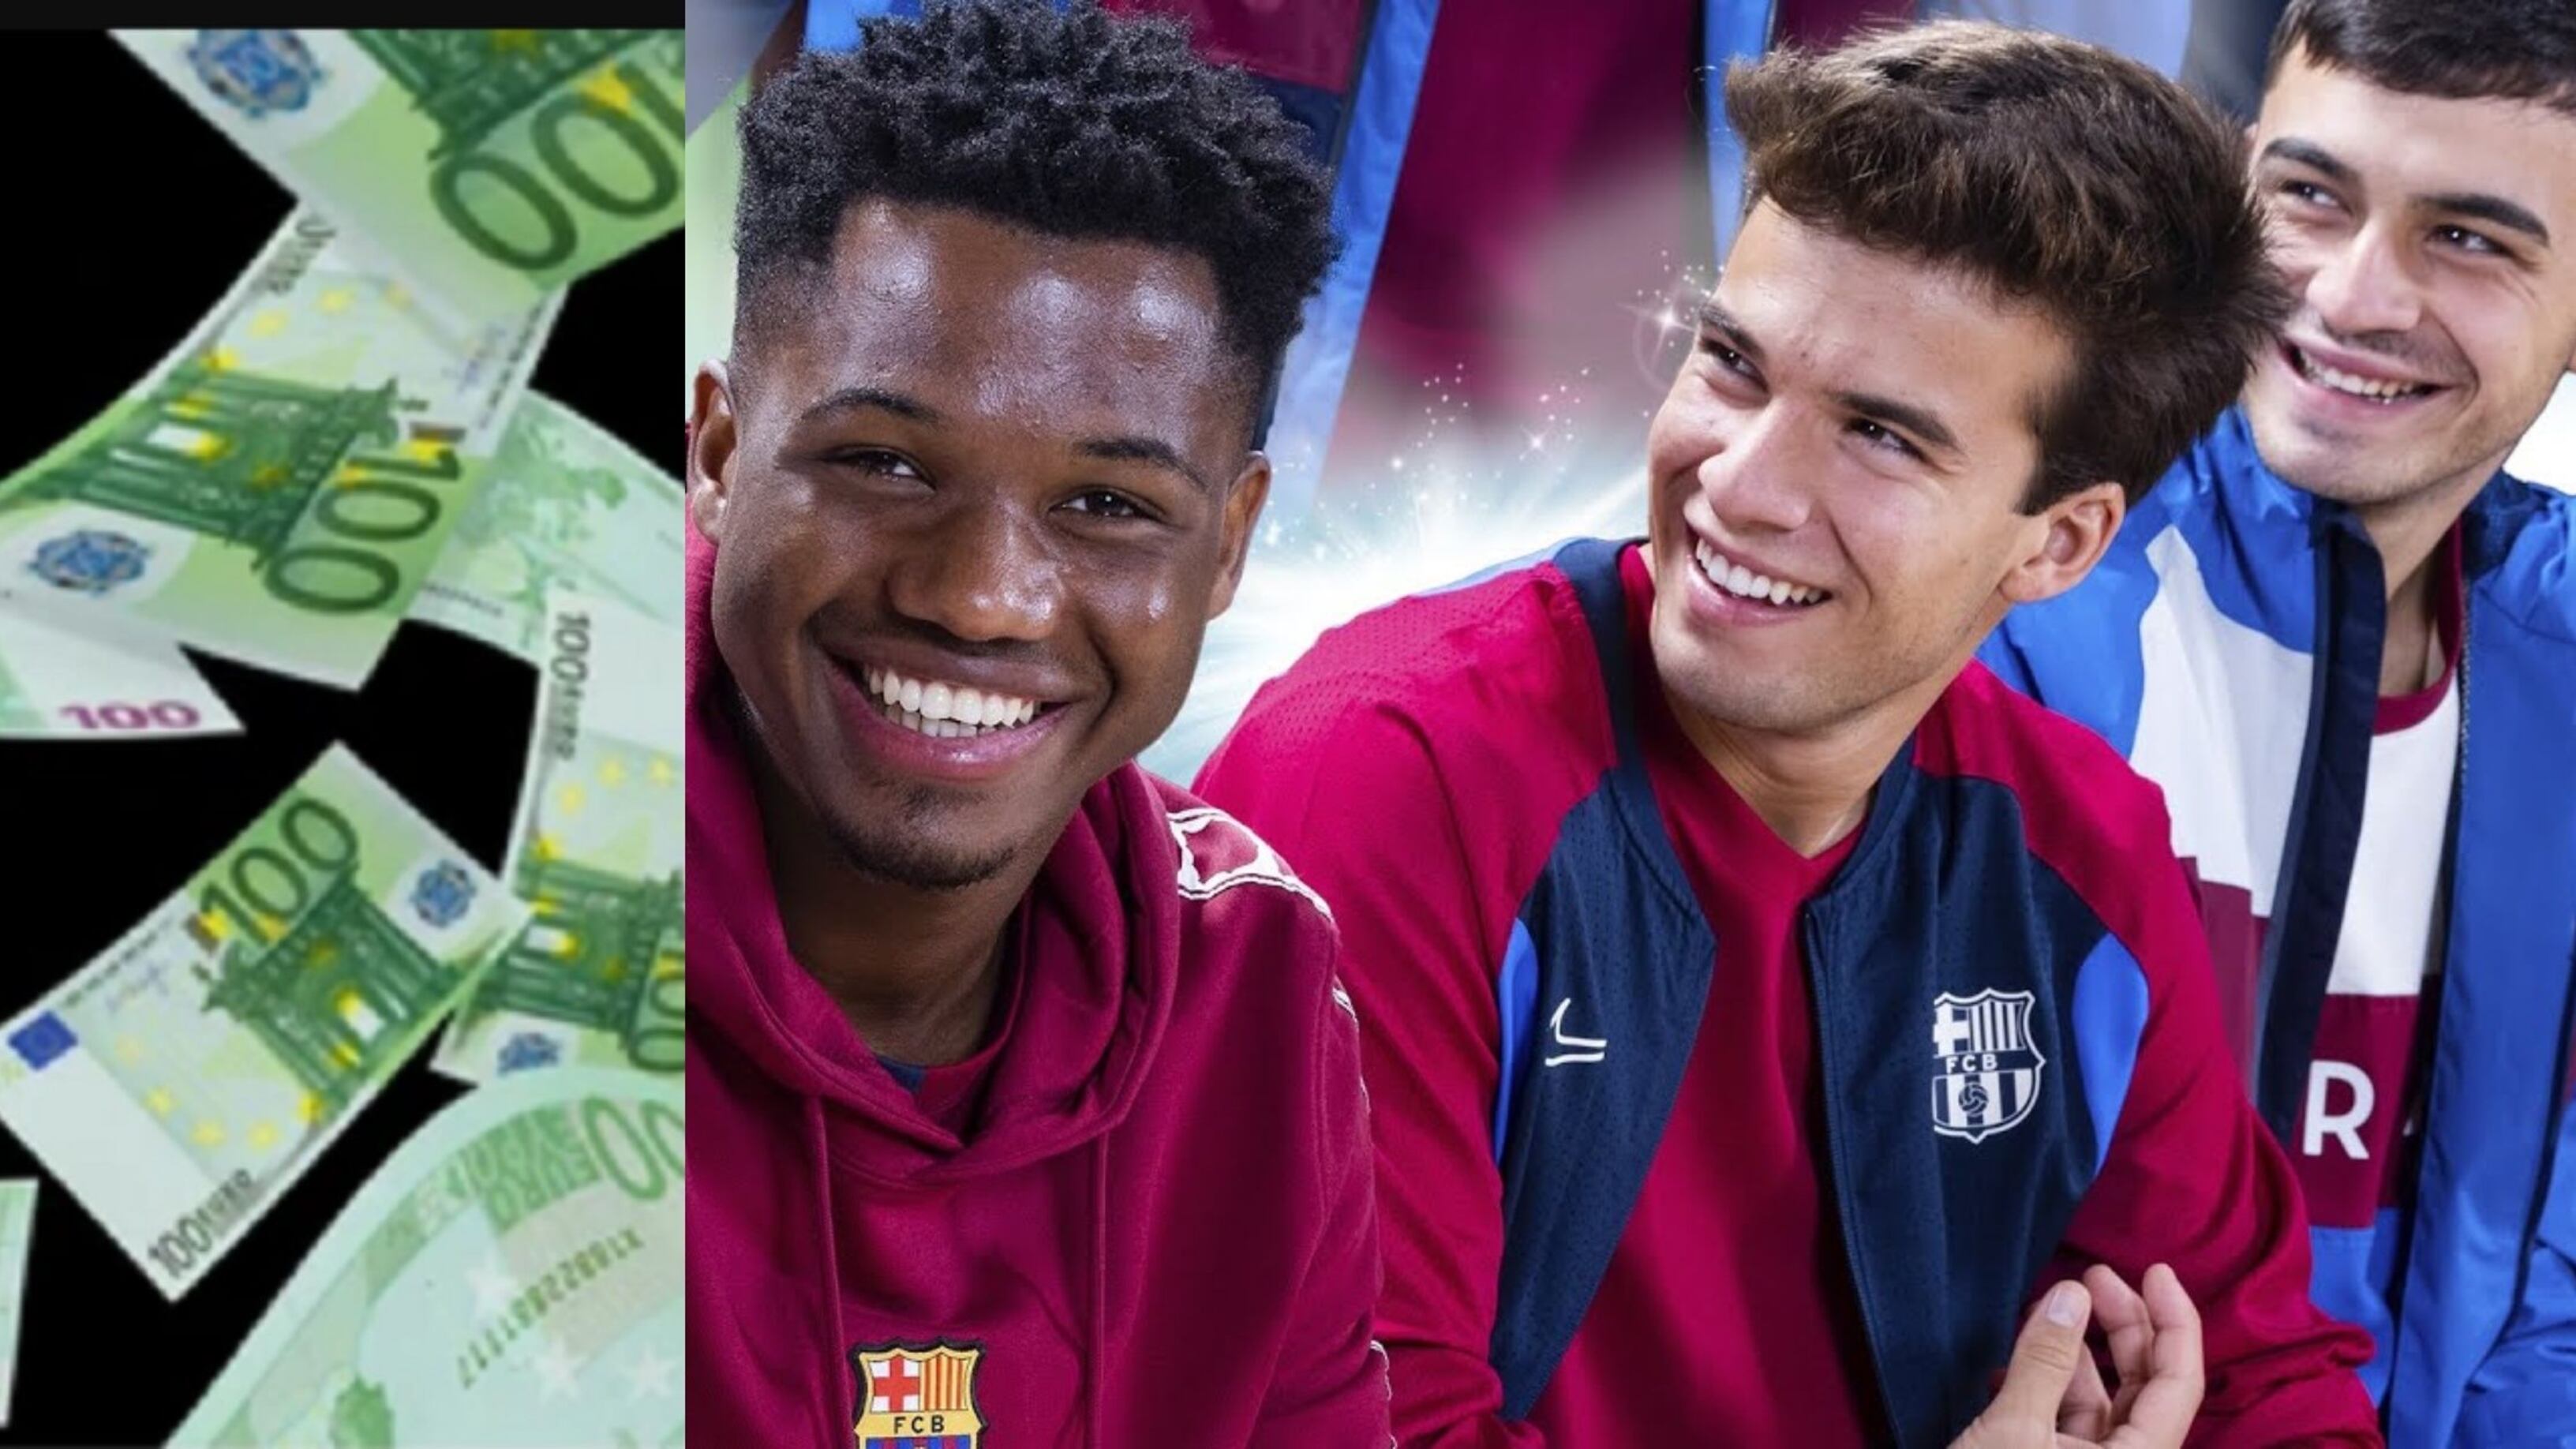 Más de 3000 millones de euros, la fortuna que puede ganar Barcelona gracias a sus 5 joyas